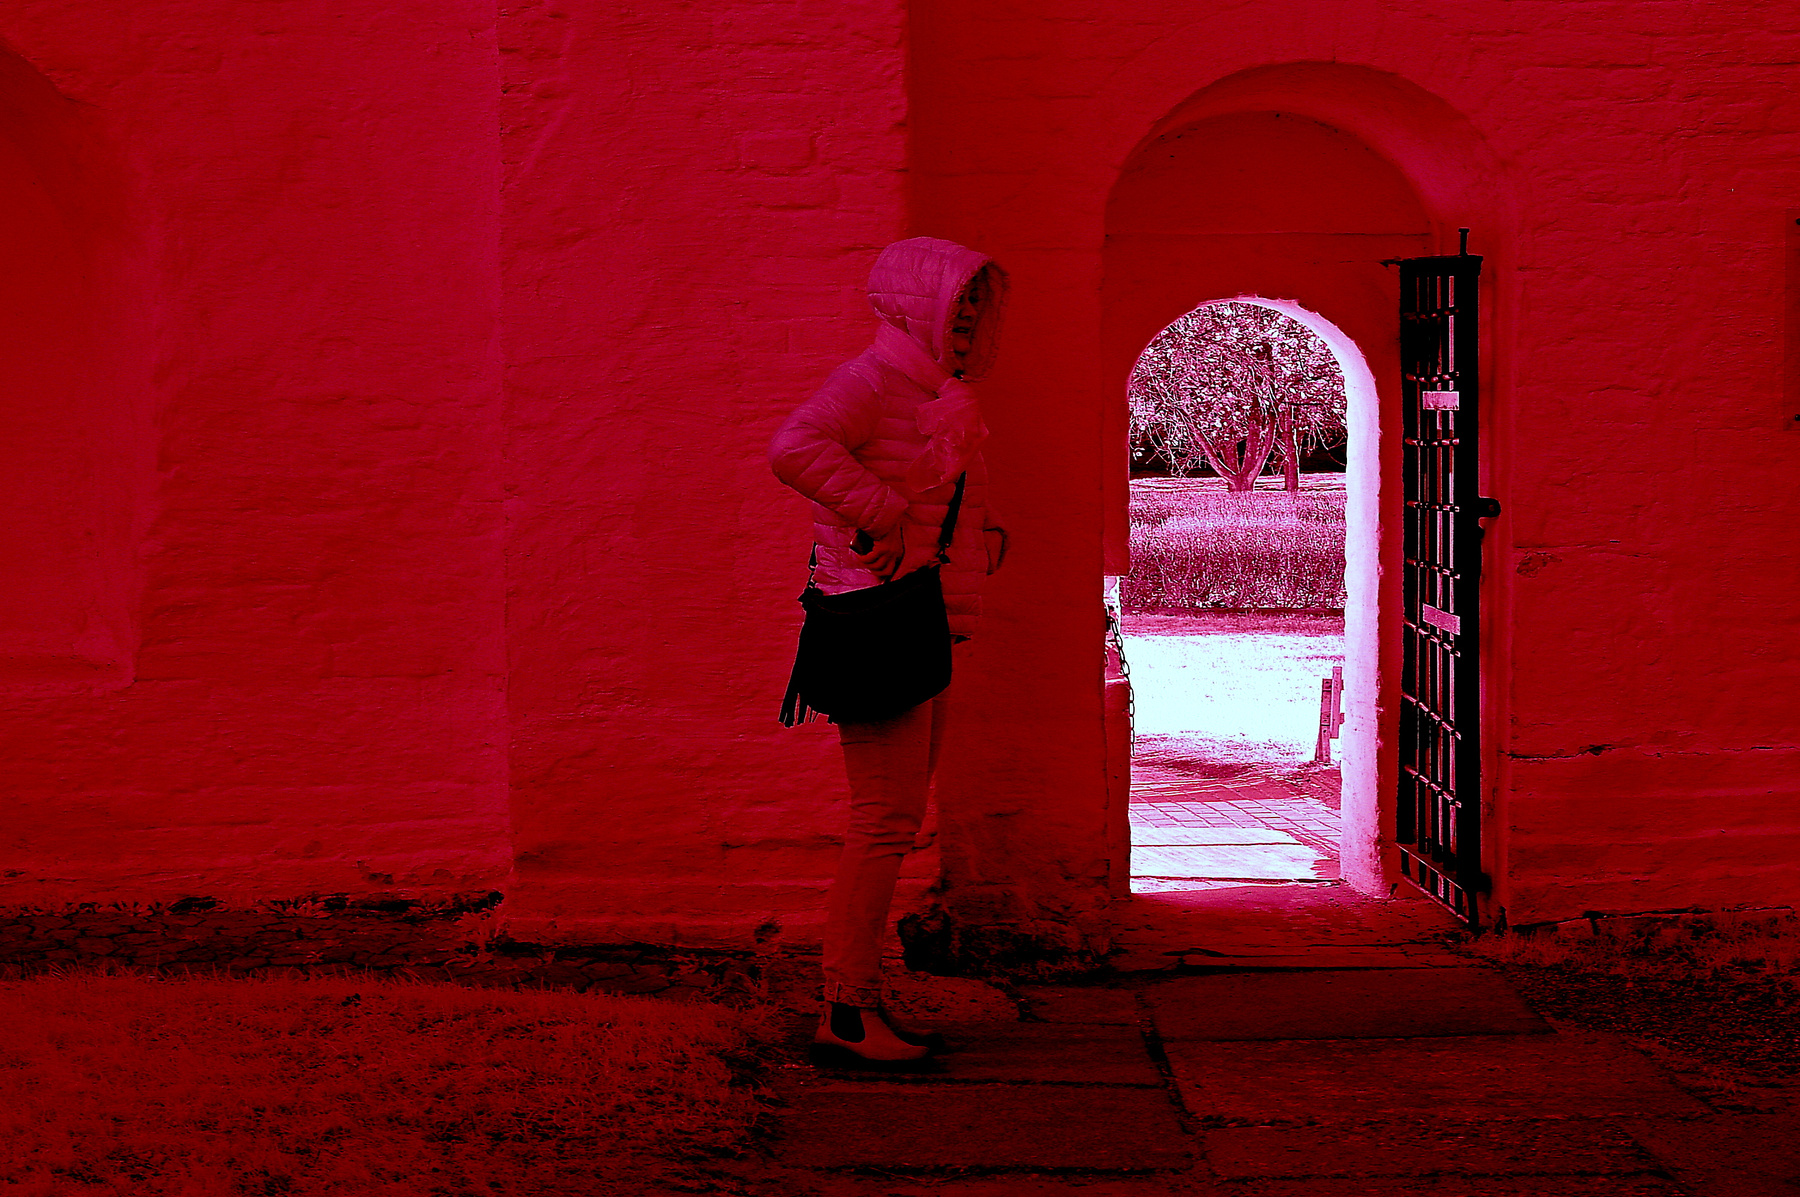 Замешкалась...Один лишь вход и тот не тот... Инфракрасная,чёрно-белая,монохромная, фотография. Hoya R72 Infrared Filter (infrared imaging) Инфракрасная чёрно-белая монохромная фотография Hoya R72 Infrared Filter infrared imaging